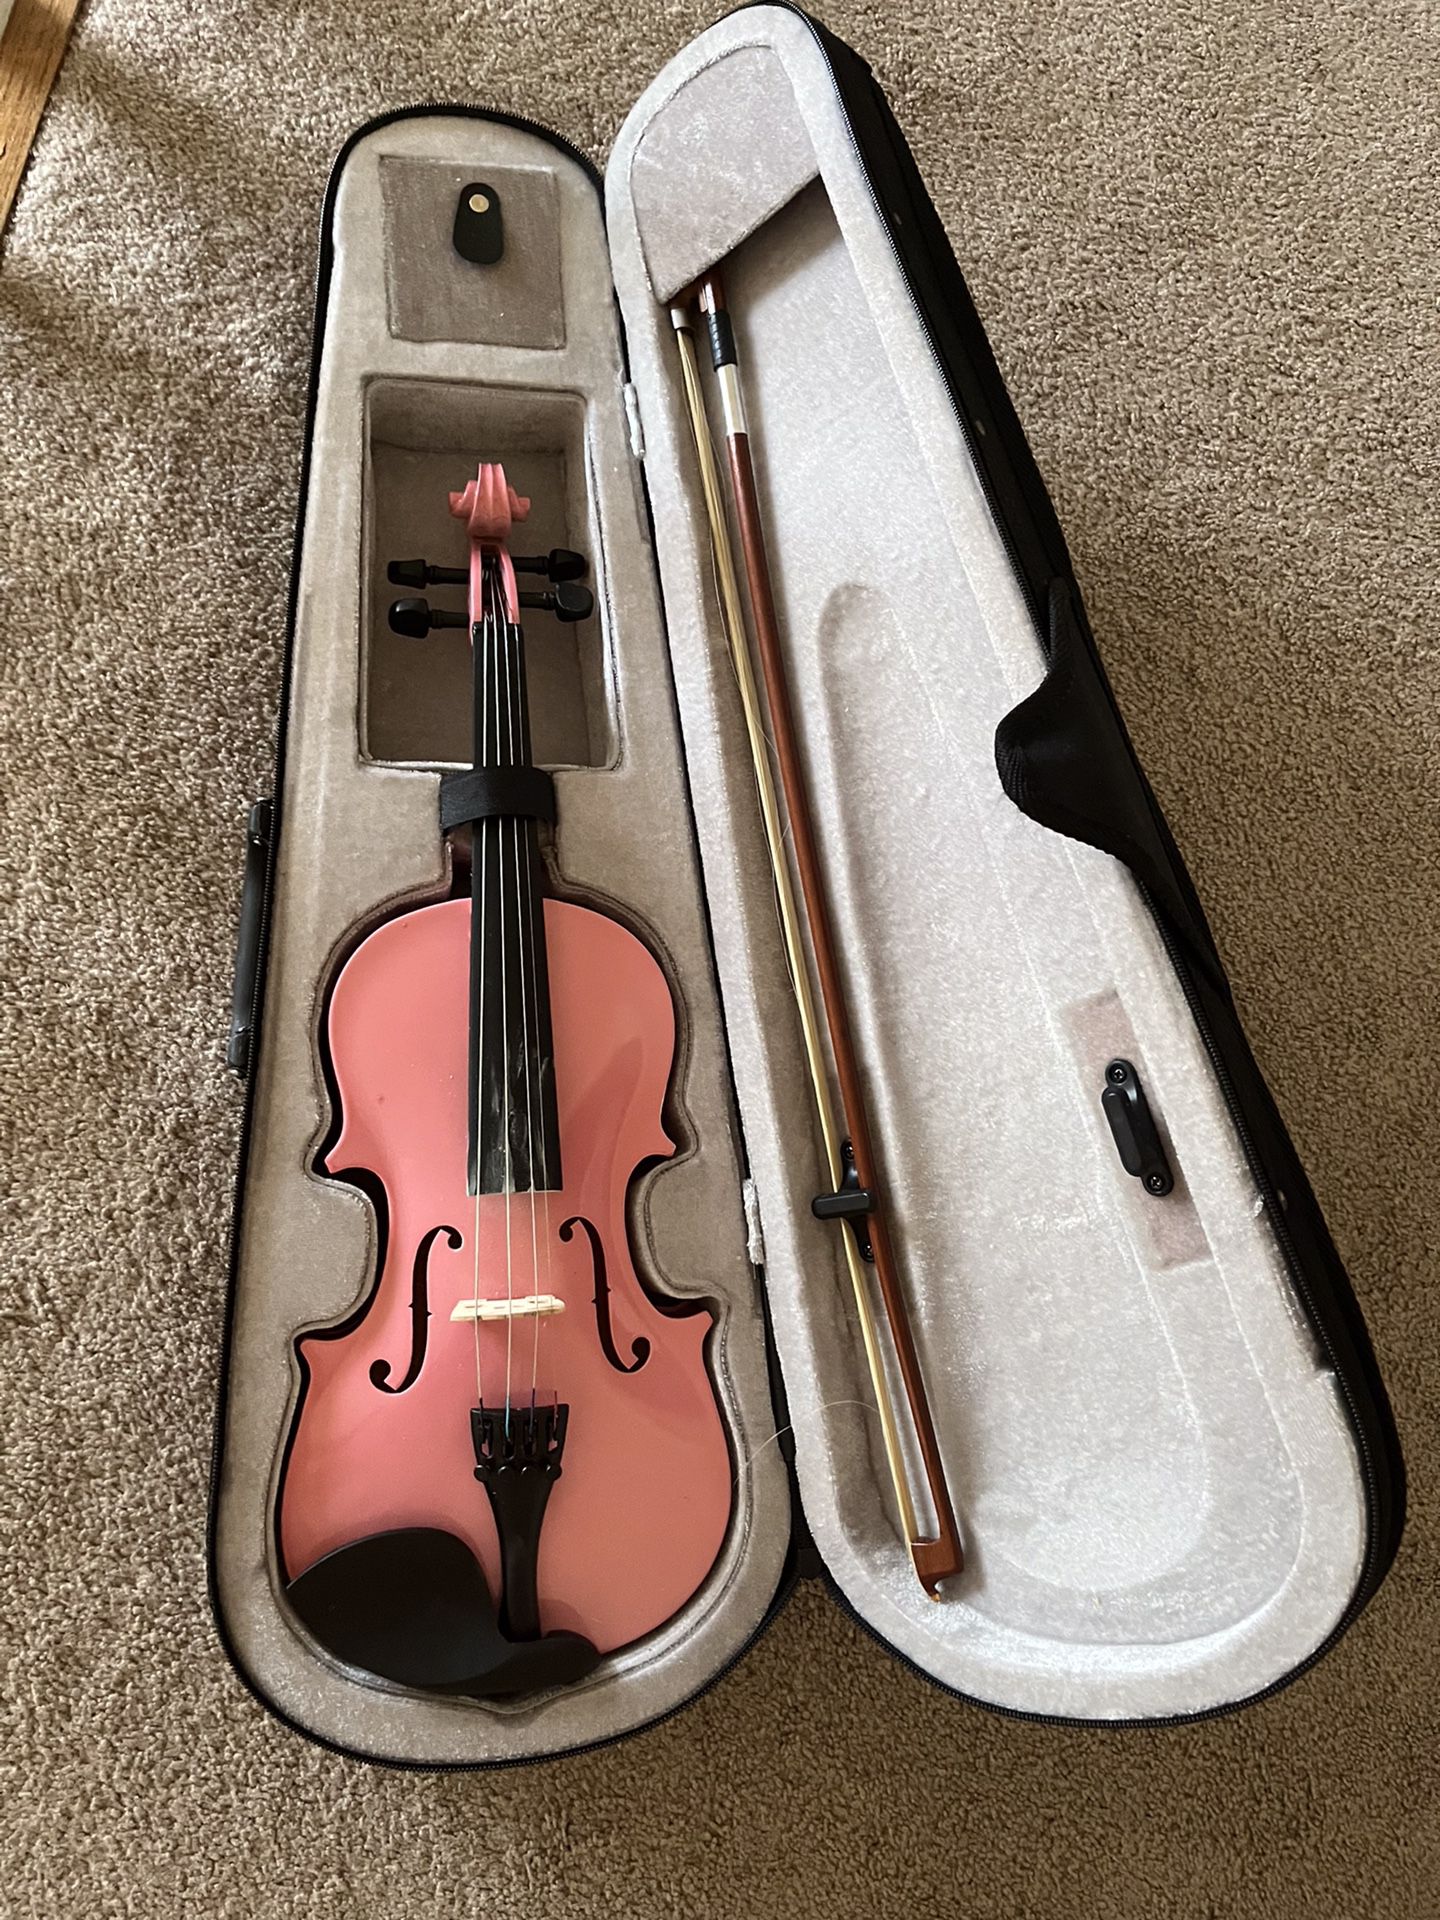 2 Children Violin Selling together Never Use! 